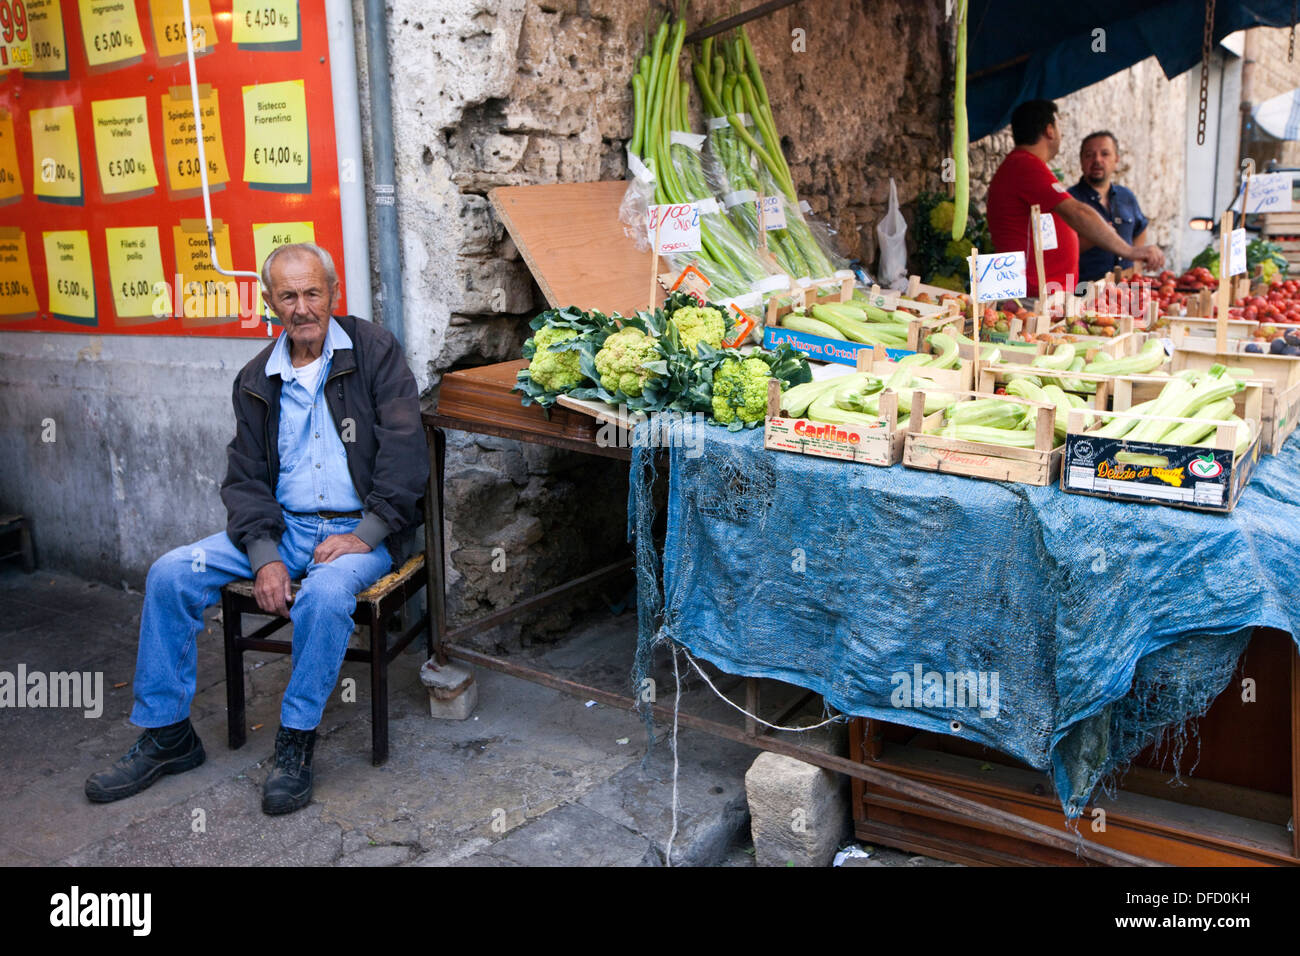 Sizilien, Markt, Marktstände in der Altstadt von Palermo, bunte Kleidung  Stockfotografie - Alamy